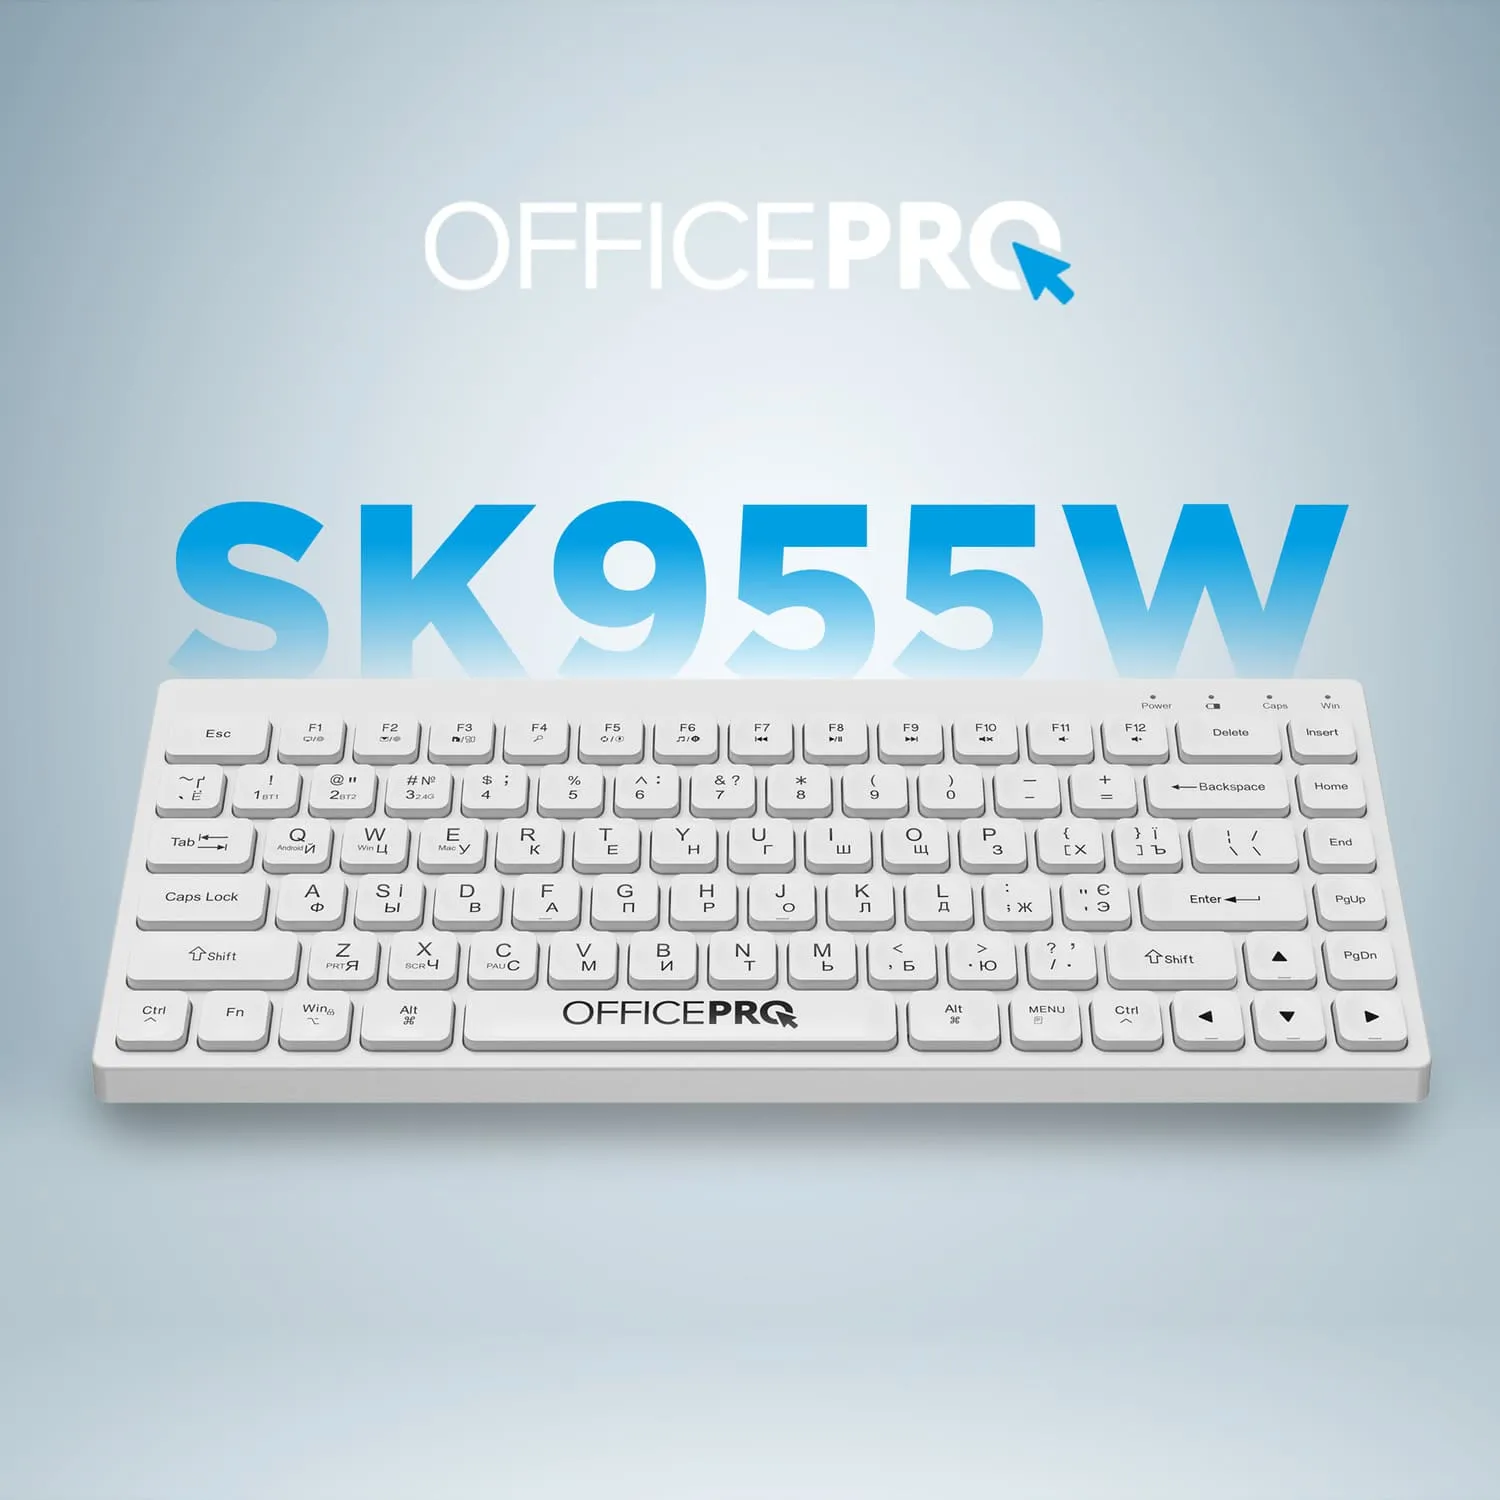 OfficePro SK955